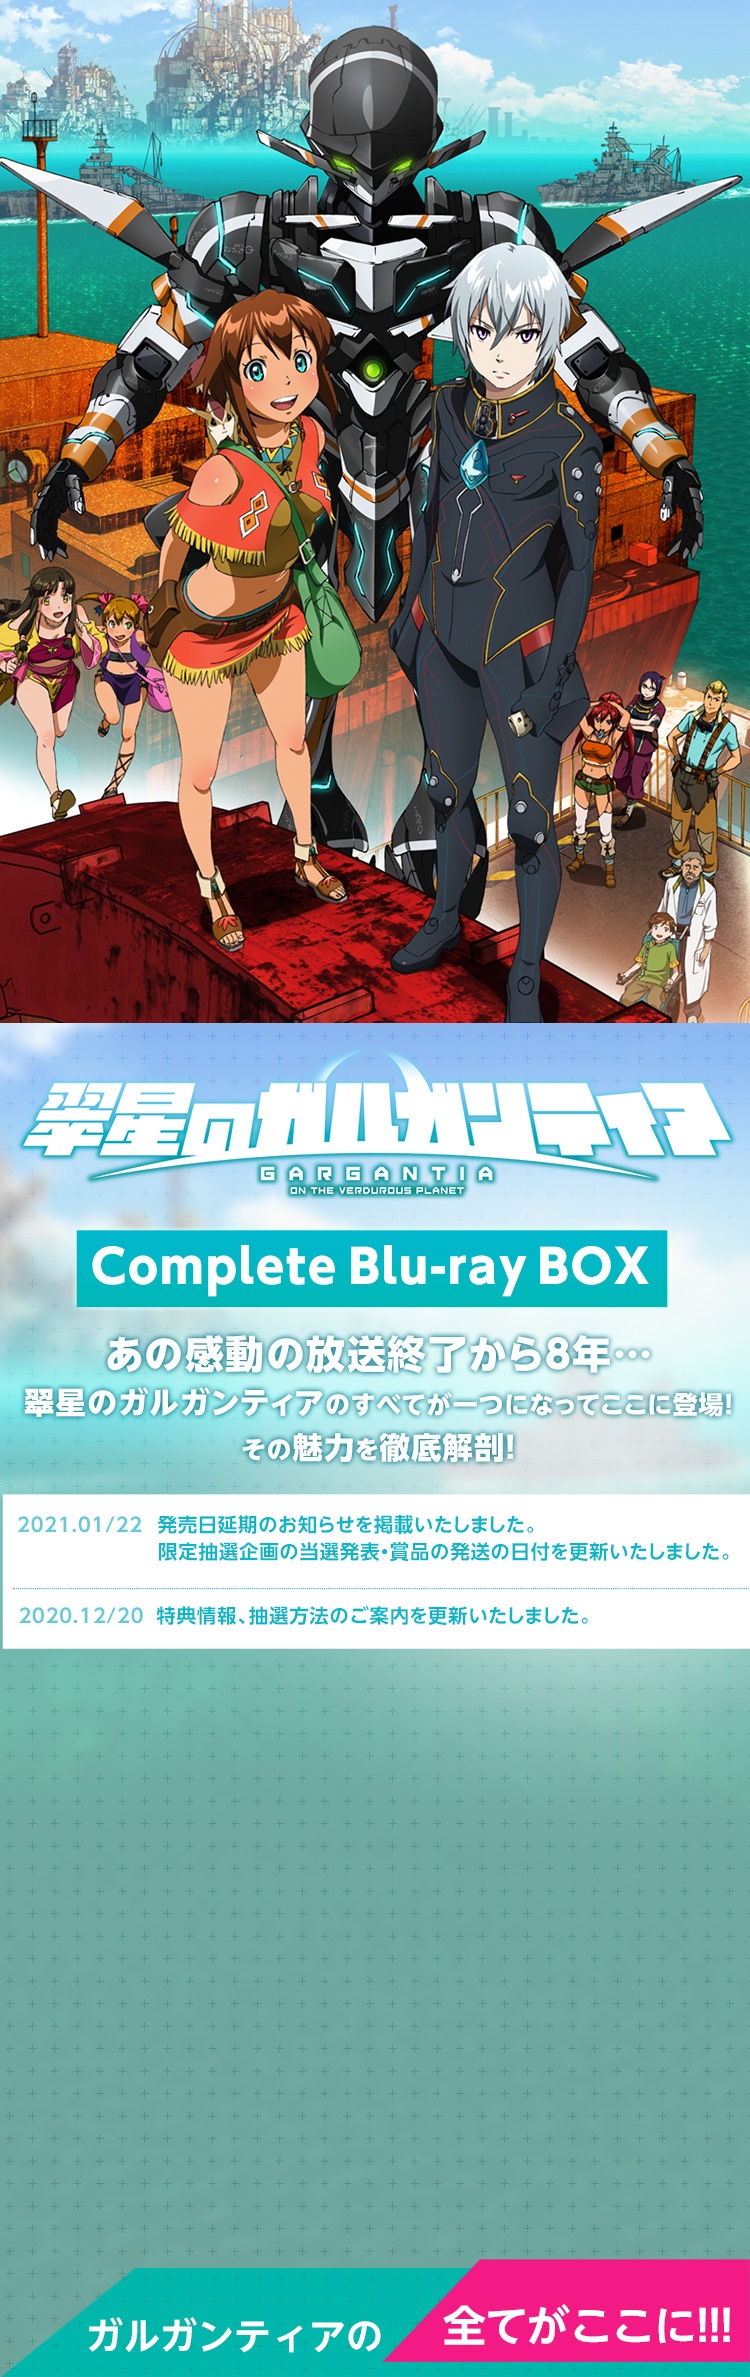 翠星のガルガンティア Complete Blu-ray BOX